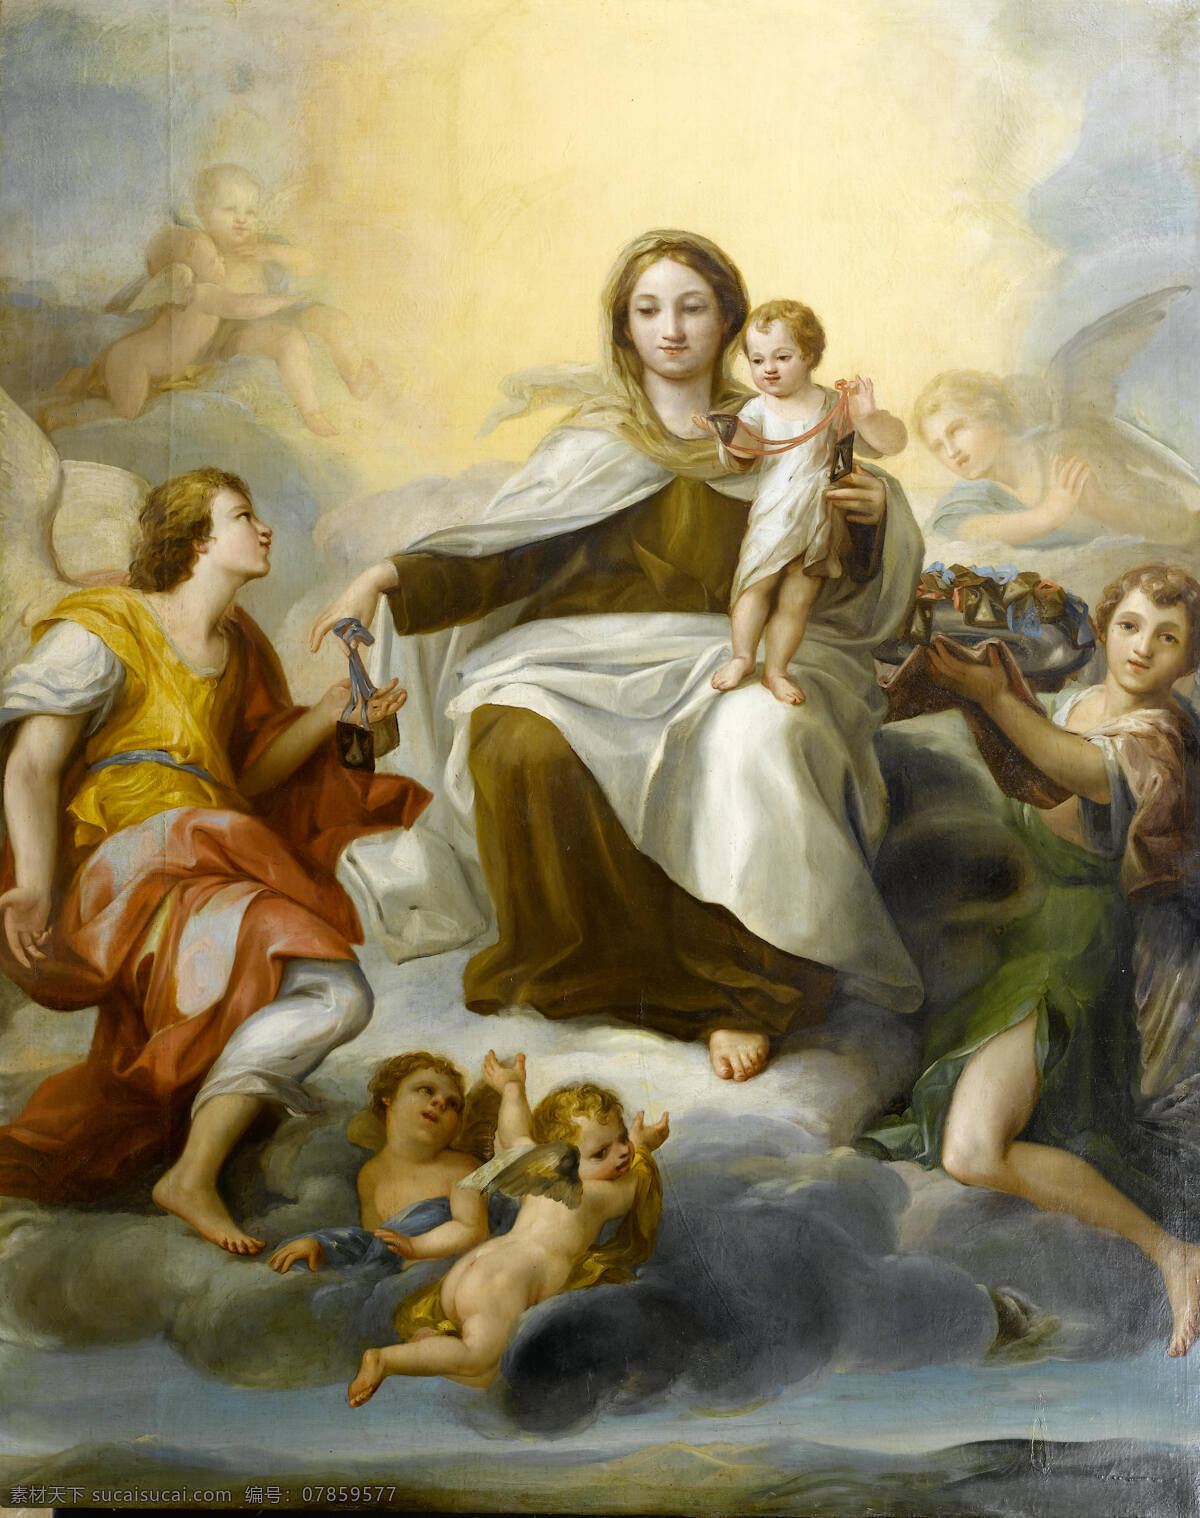 圣母与圣婴 圣经故事 天堂 天使 宗教油画 古典油画 油画 绘画书法 文化艺术